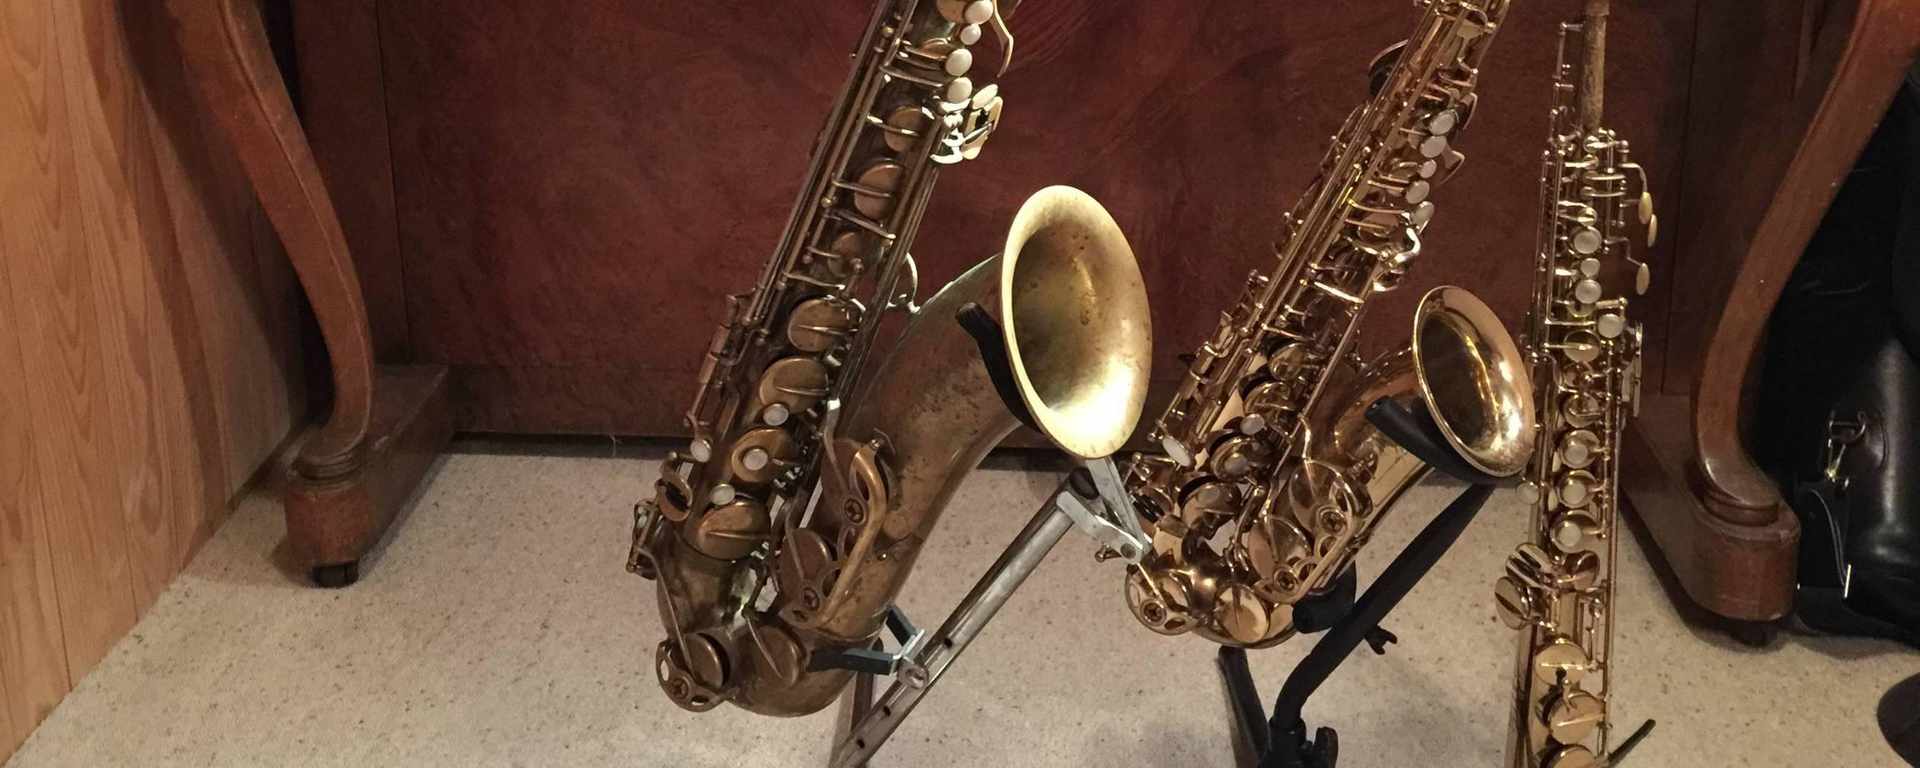 Saxofonunterricht Online